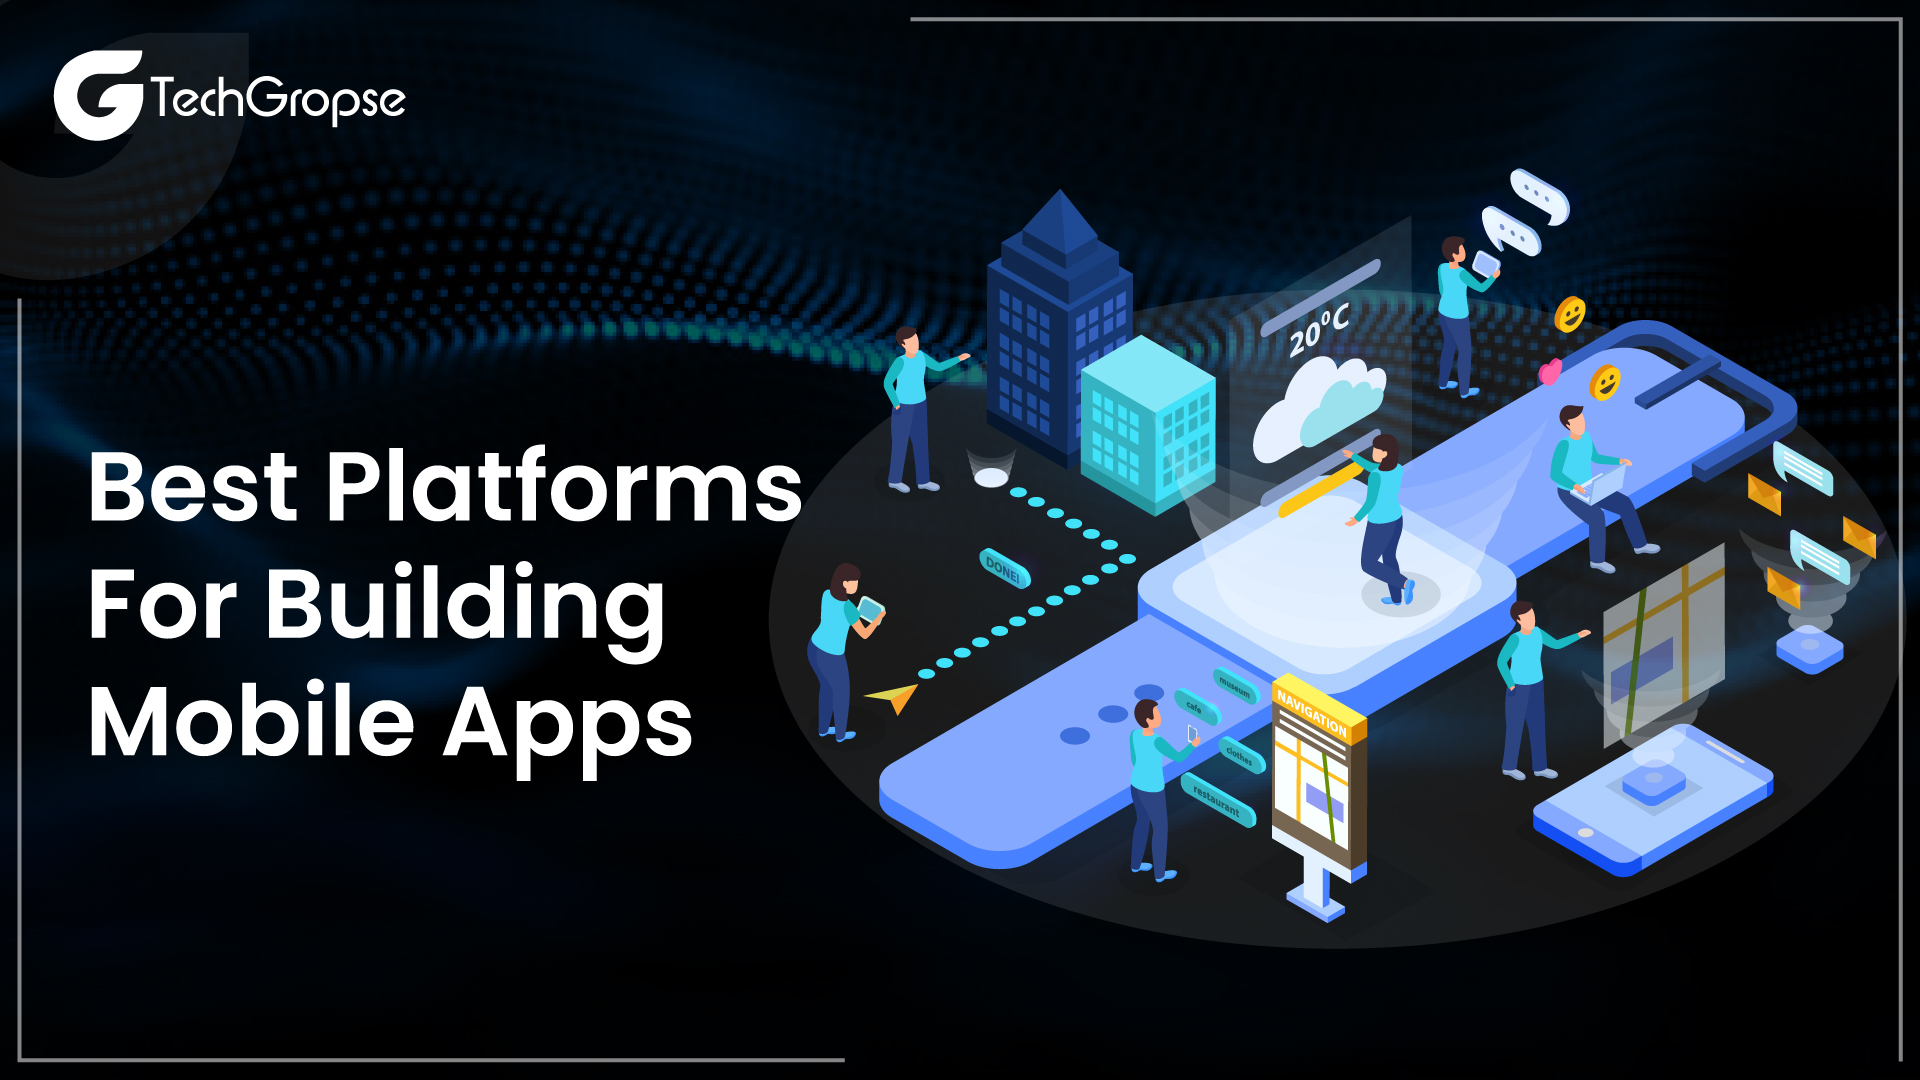 Platforms for Building Mobile Apps